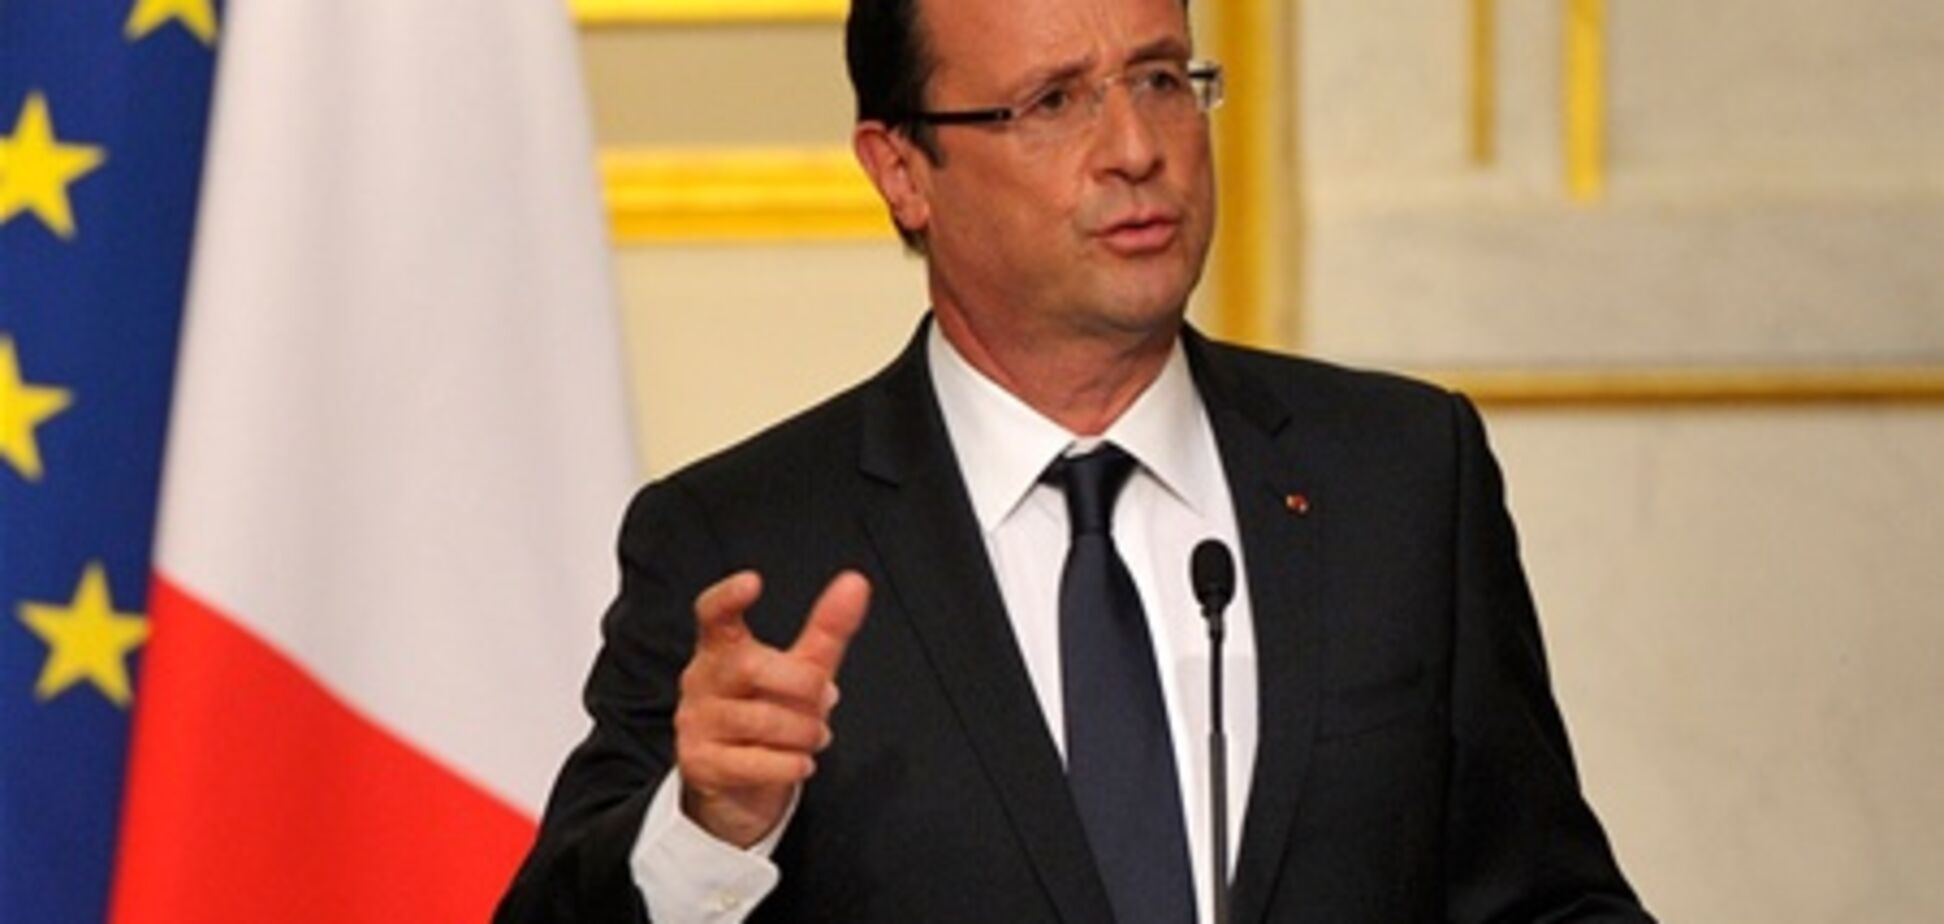 Олланд ввел французские войска в Мали